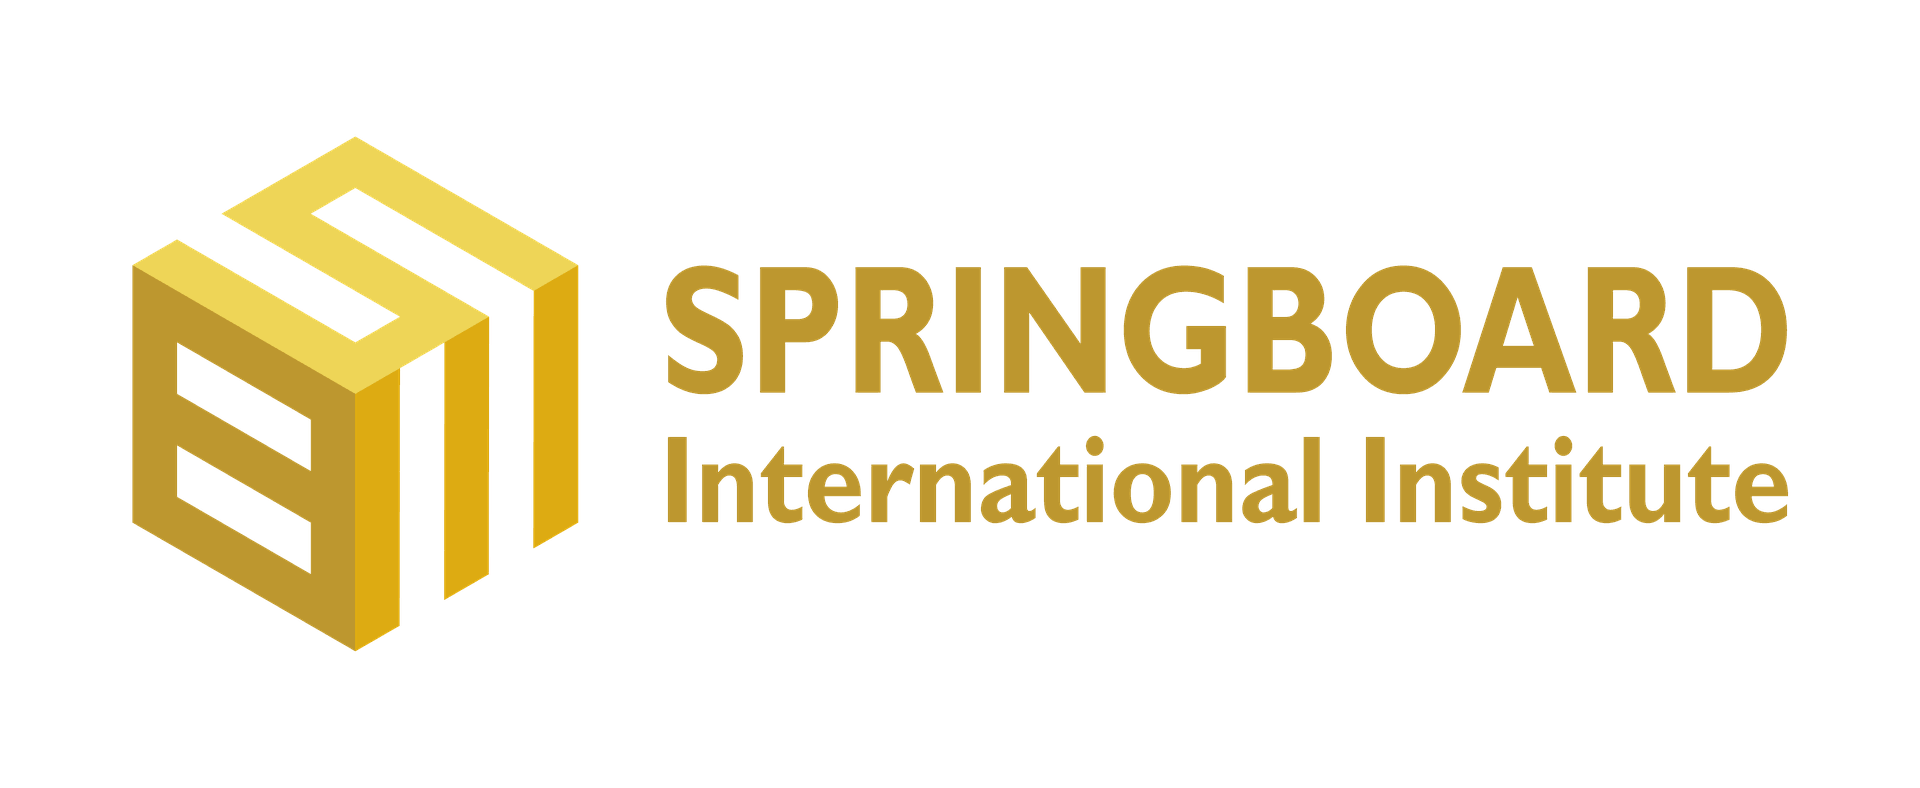 SPRINGBOARD INTERNATIONAL INSTITUTE